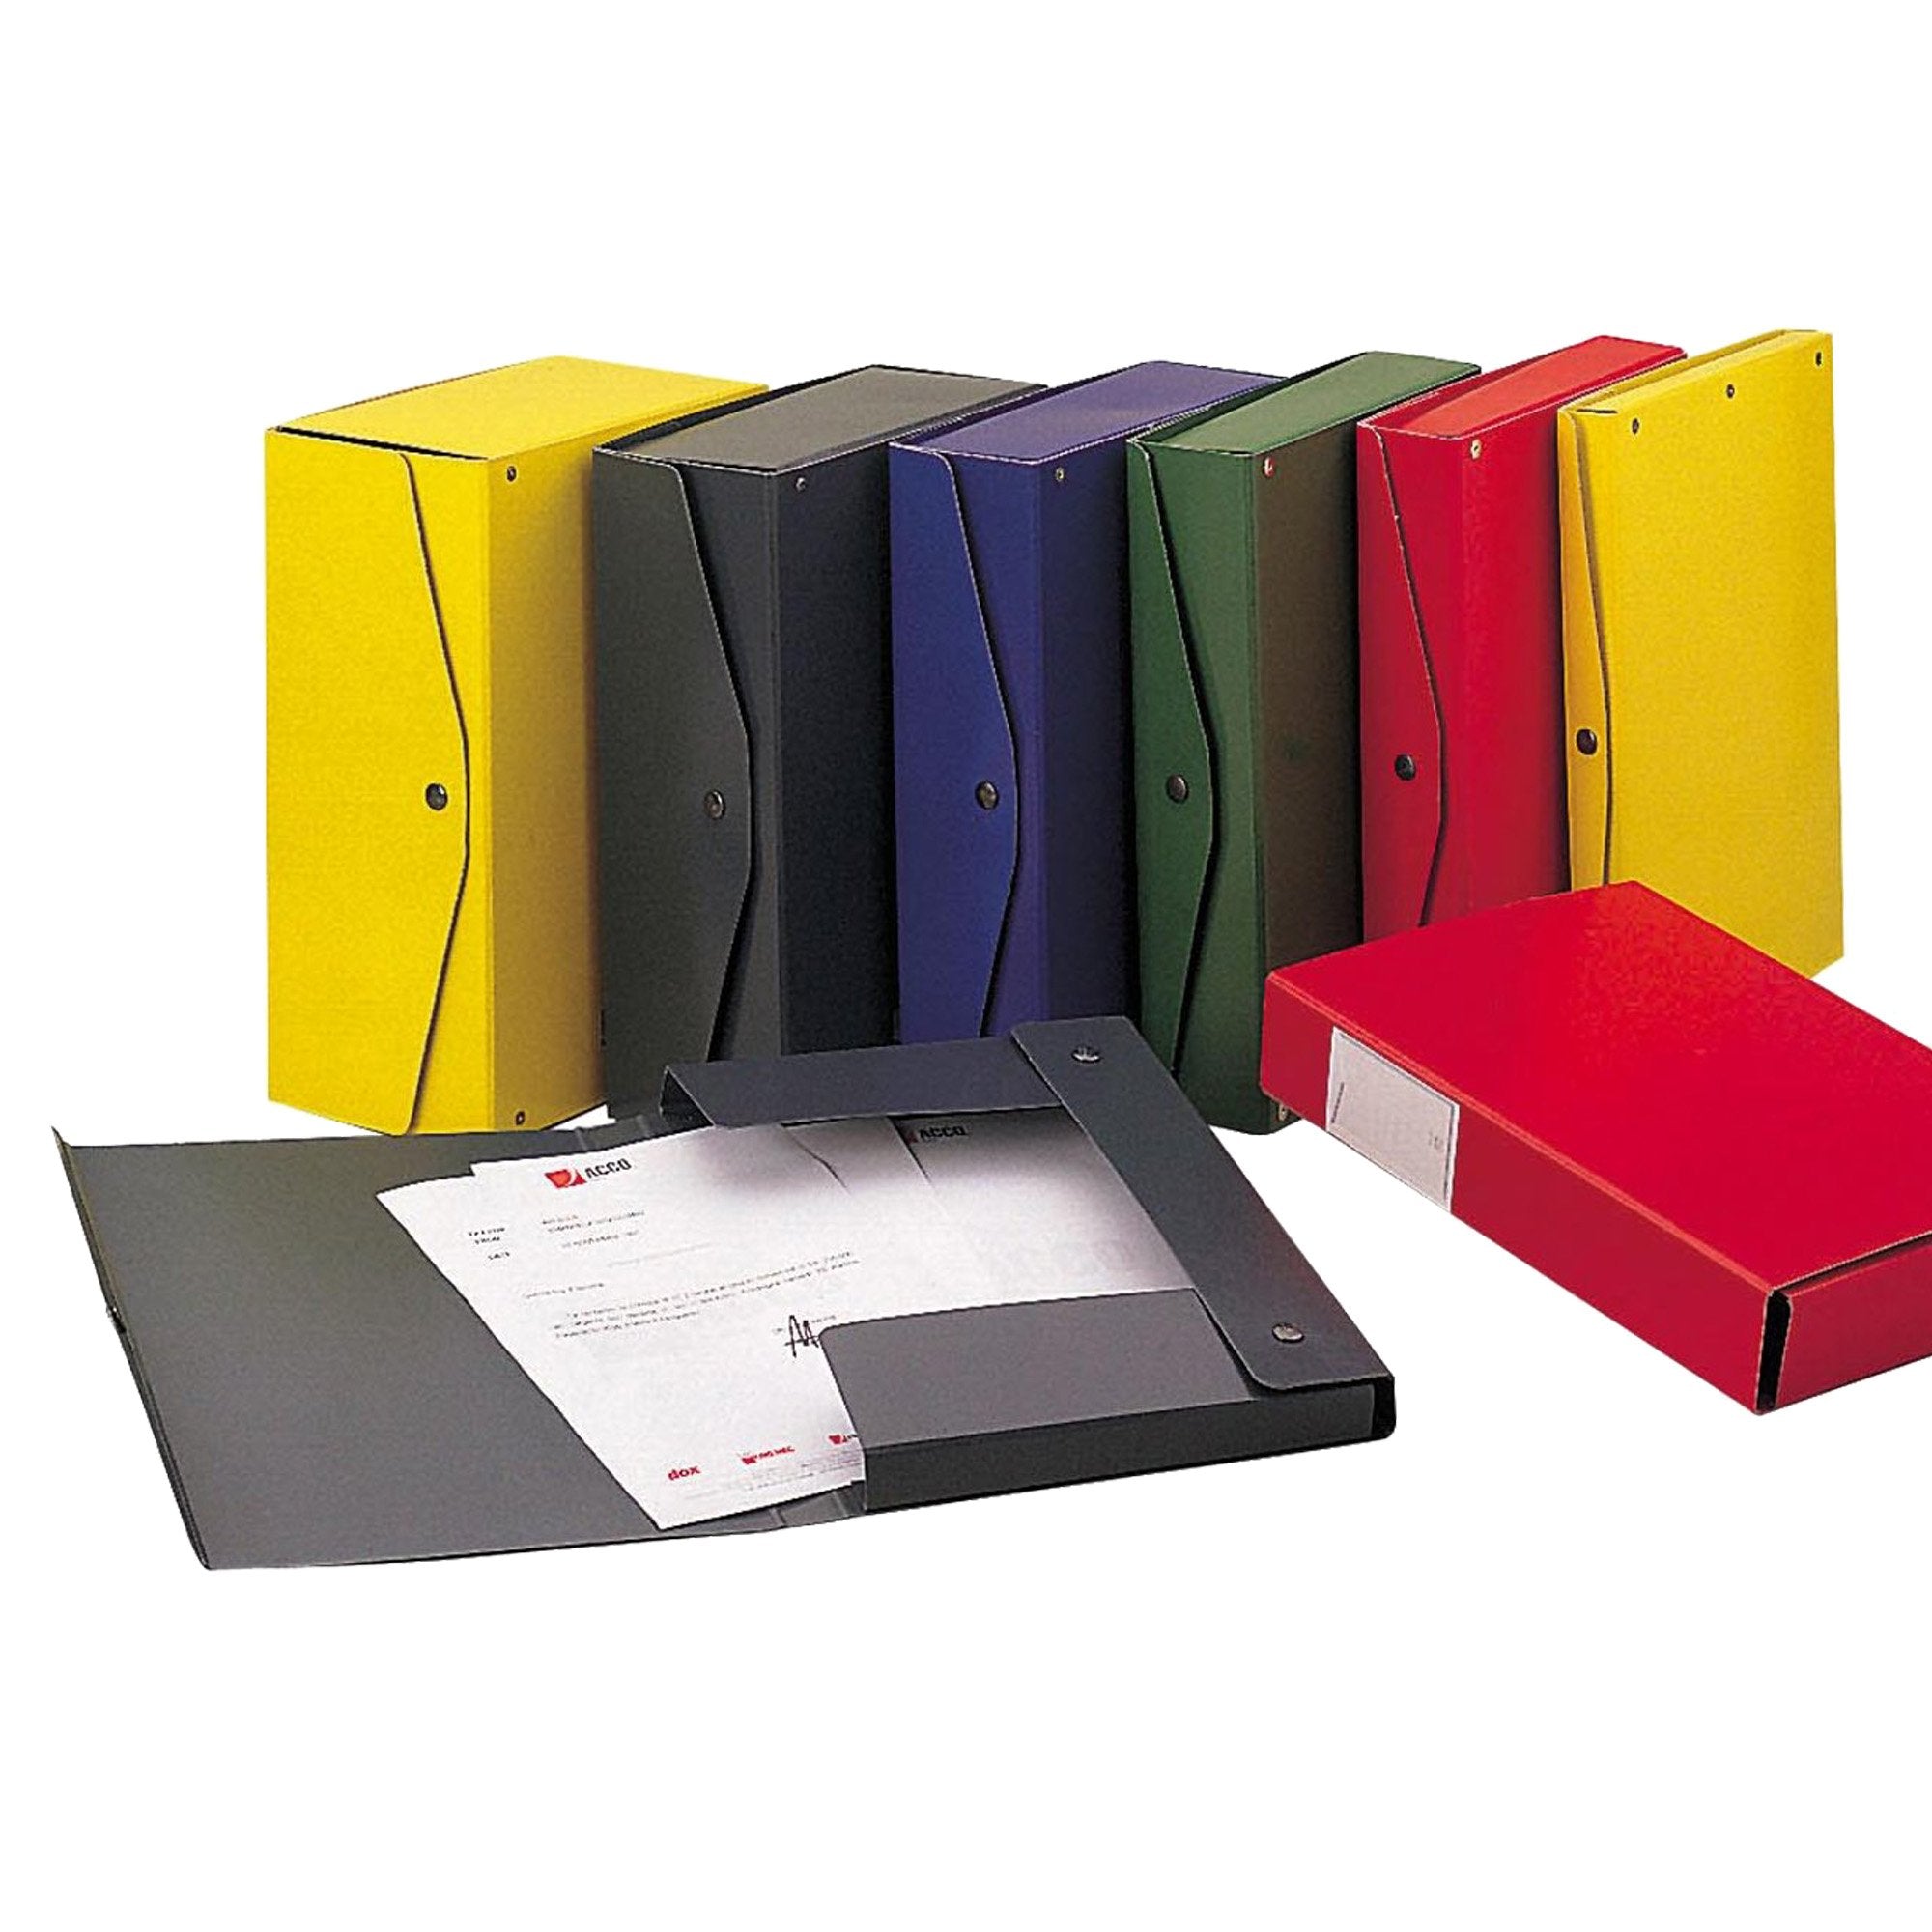 king-mec-scatola-archivio-project-6-giallo-25x35cm-dorso-6cm